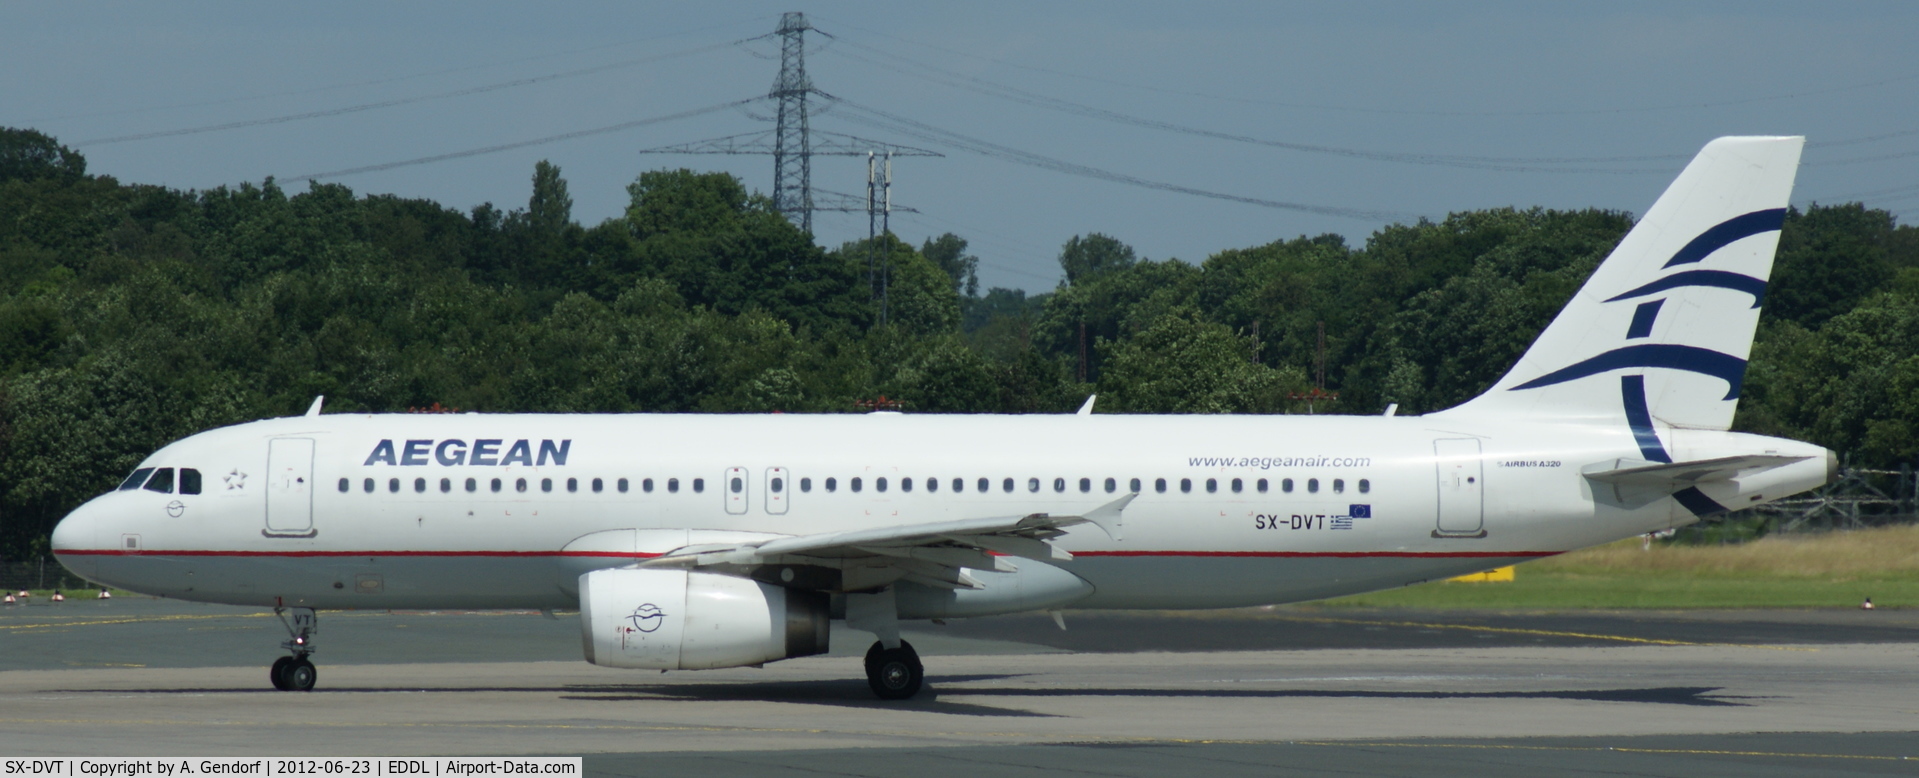 SX-DVT, 2008 Airbus A320-232 C/N 3745, Aegean Airlines, is lining up RWY 23L at Düsseldorf Int´l (EDDL)